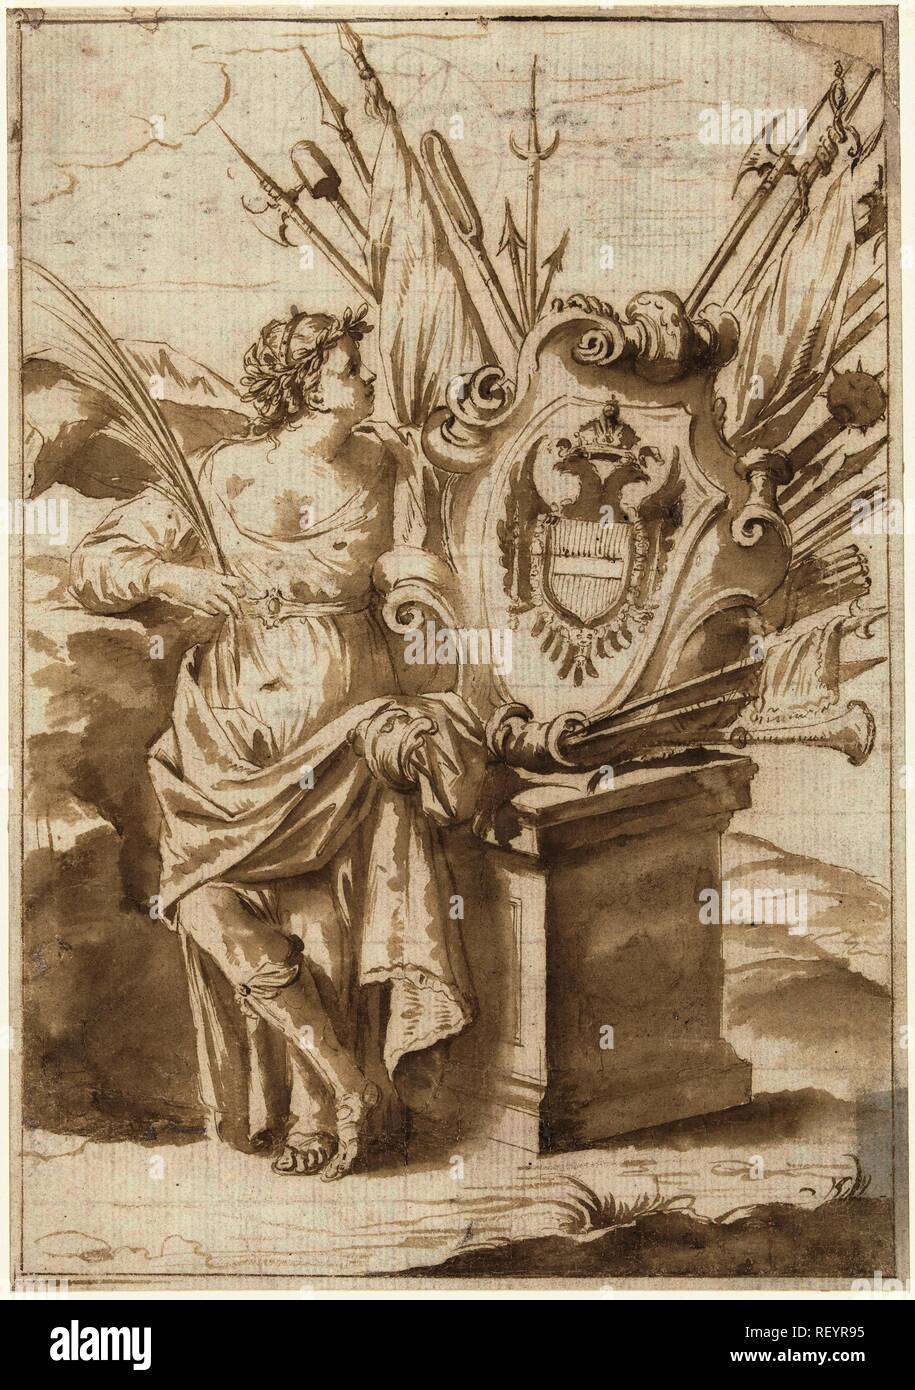 Frau an das Wappen von Österreich. Verfasser: Anonym. Datierung: 1600 - 1699. Maße: H 254 mm x B 178 mm. Museum: Rijksmuseum, Amsterdam. Stockfoto